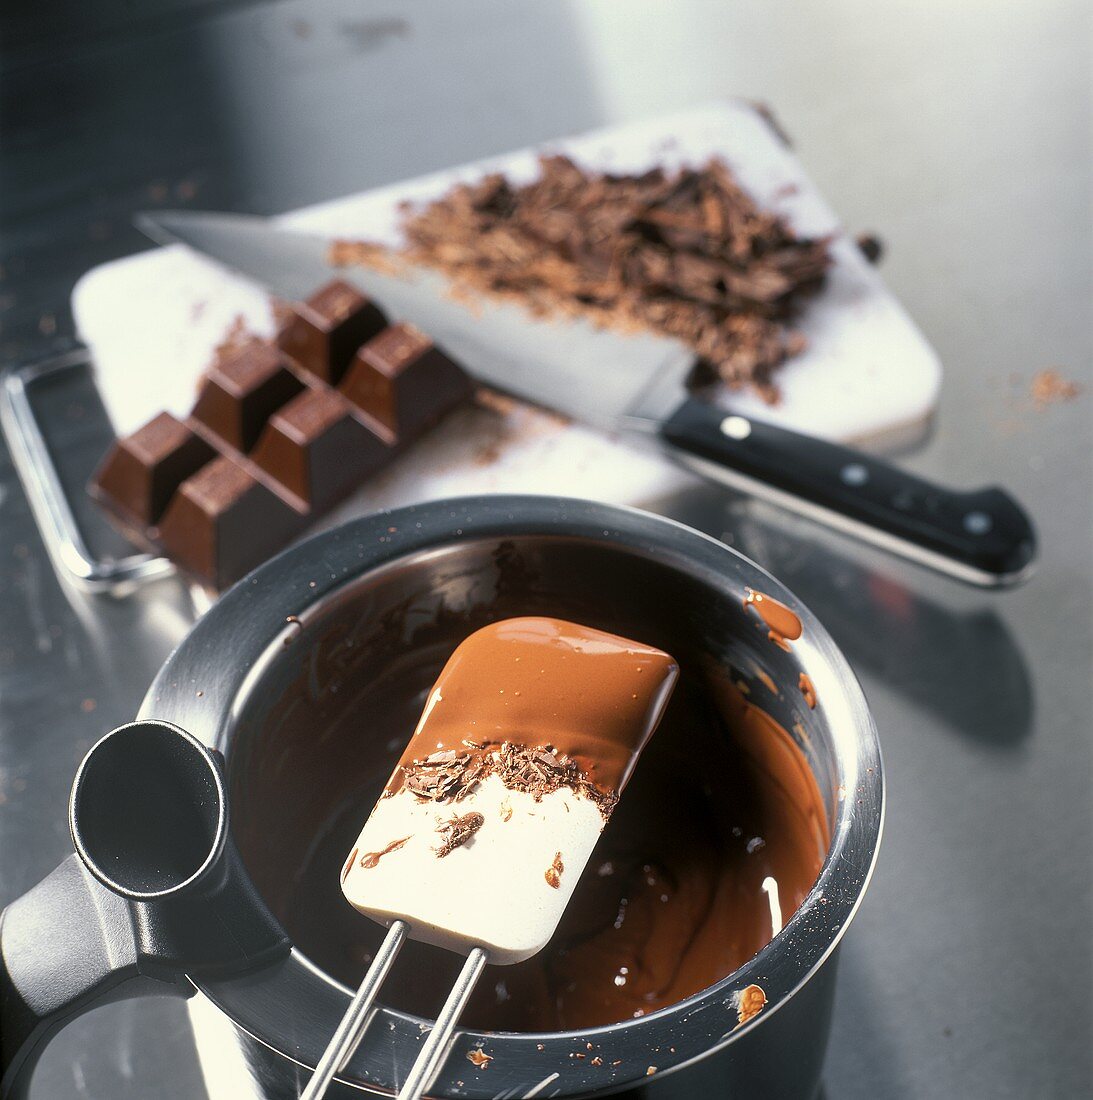 Schokoladenmousse zubereiten: Kuvertüre schmelzen